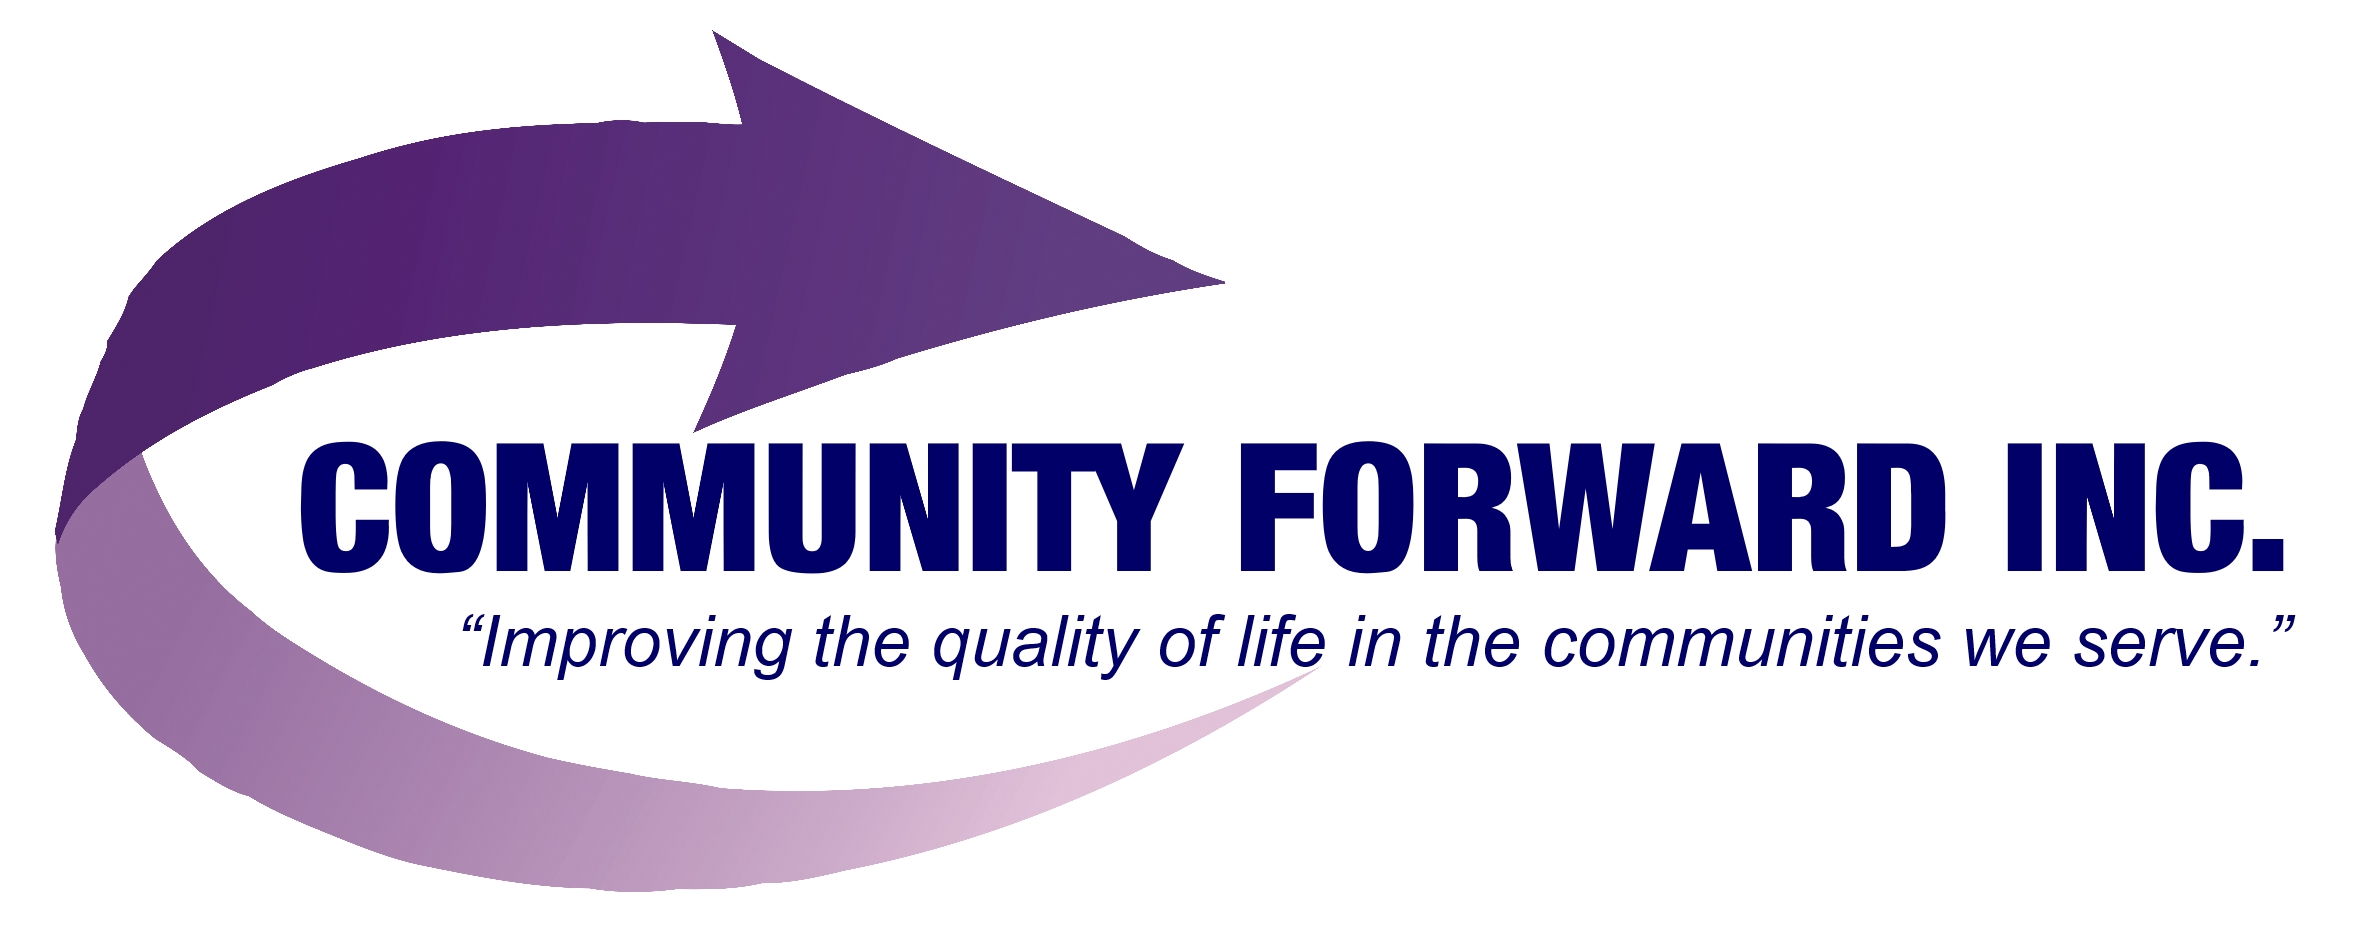 Community Forward Inc.